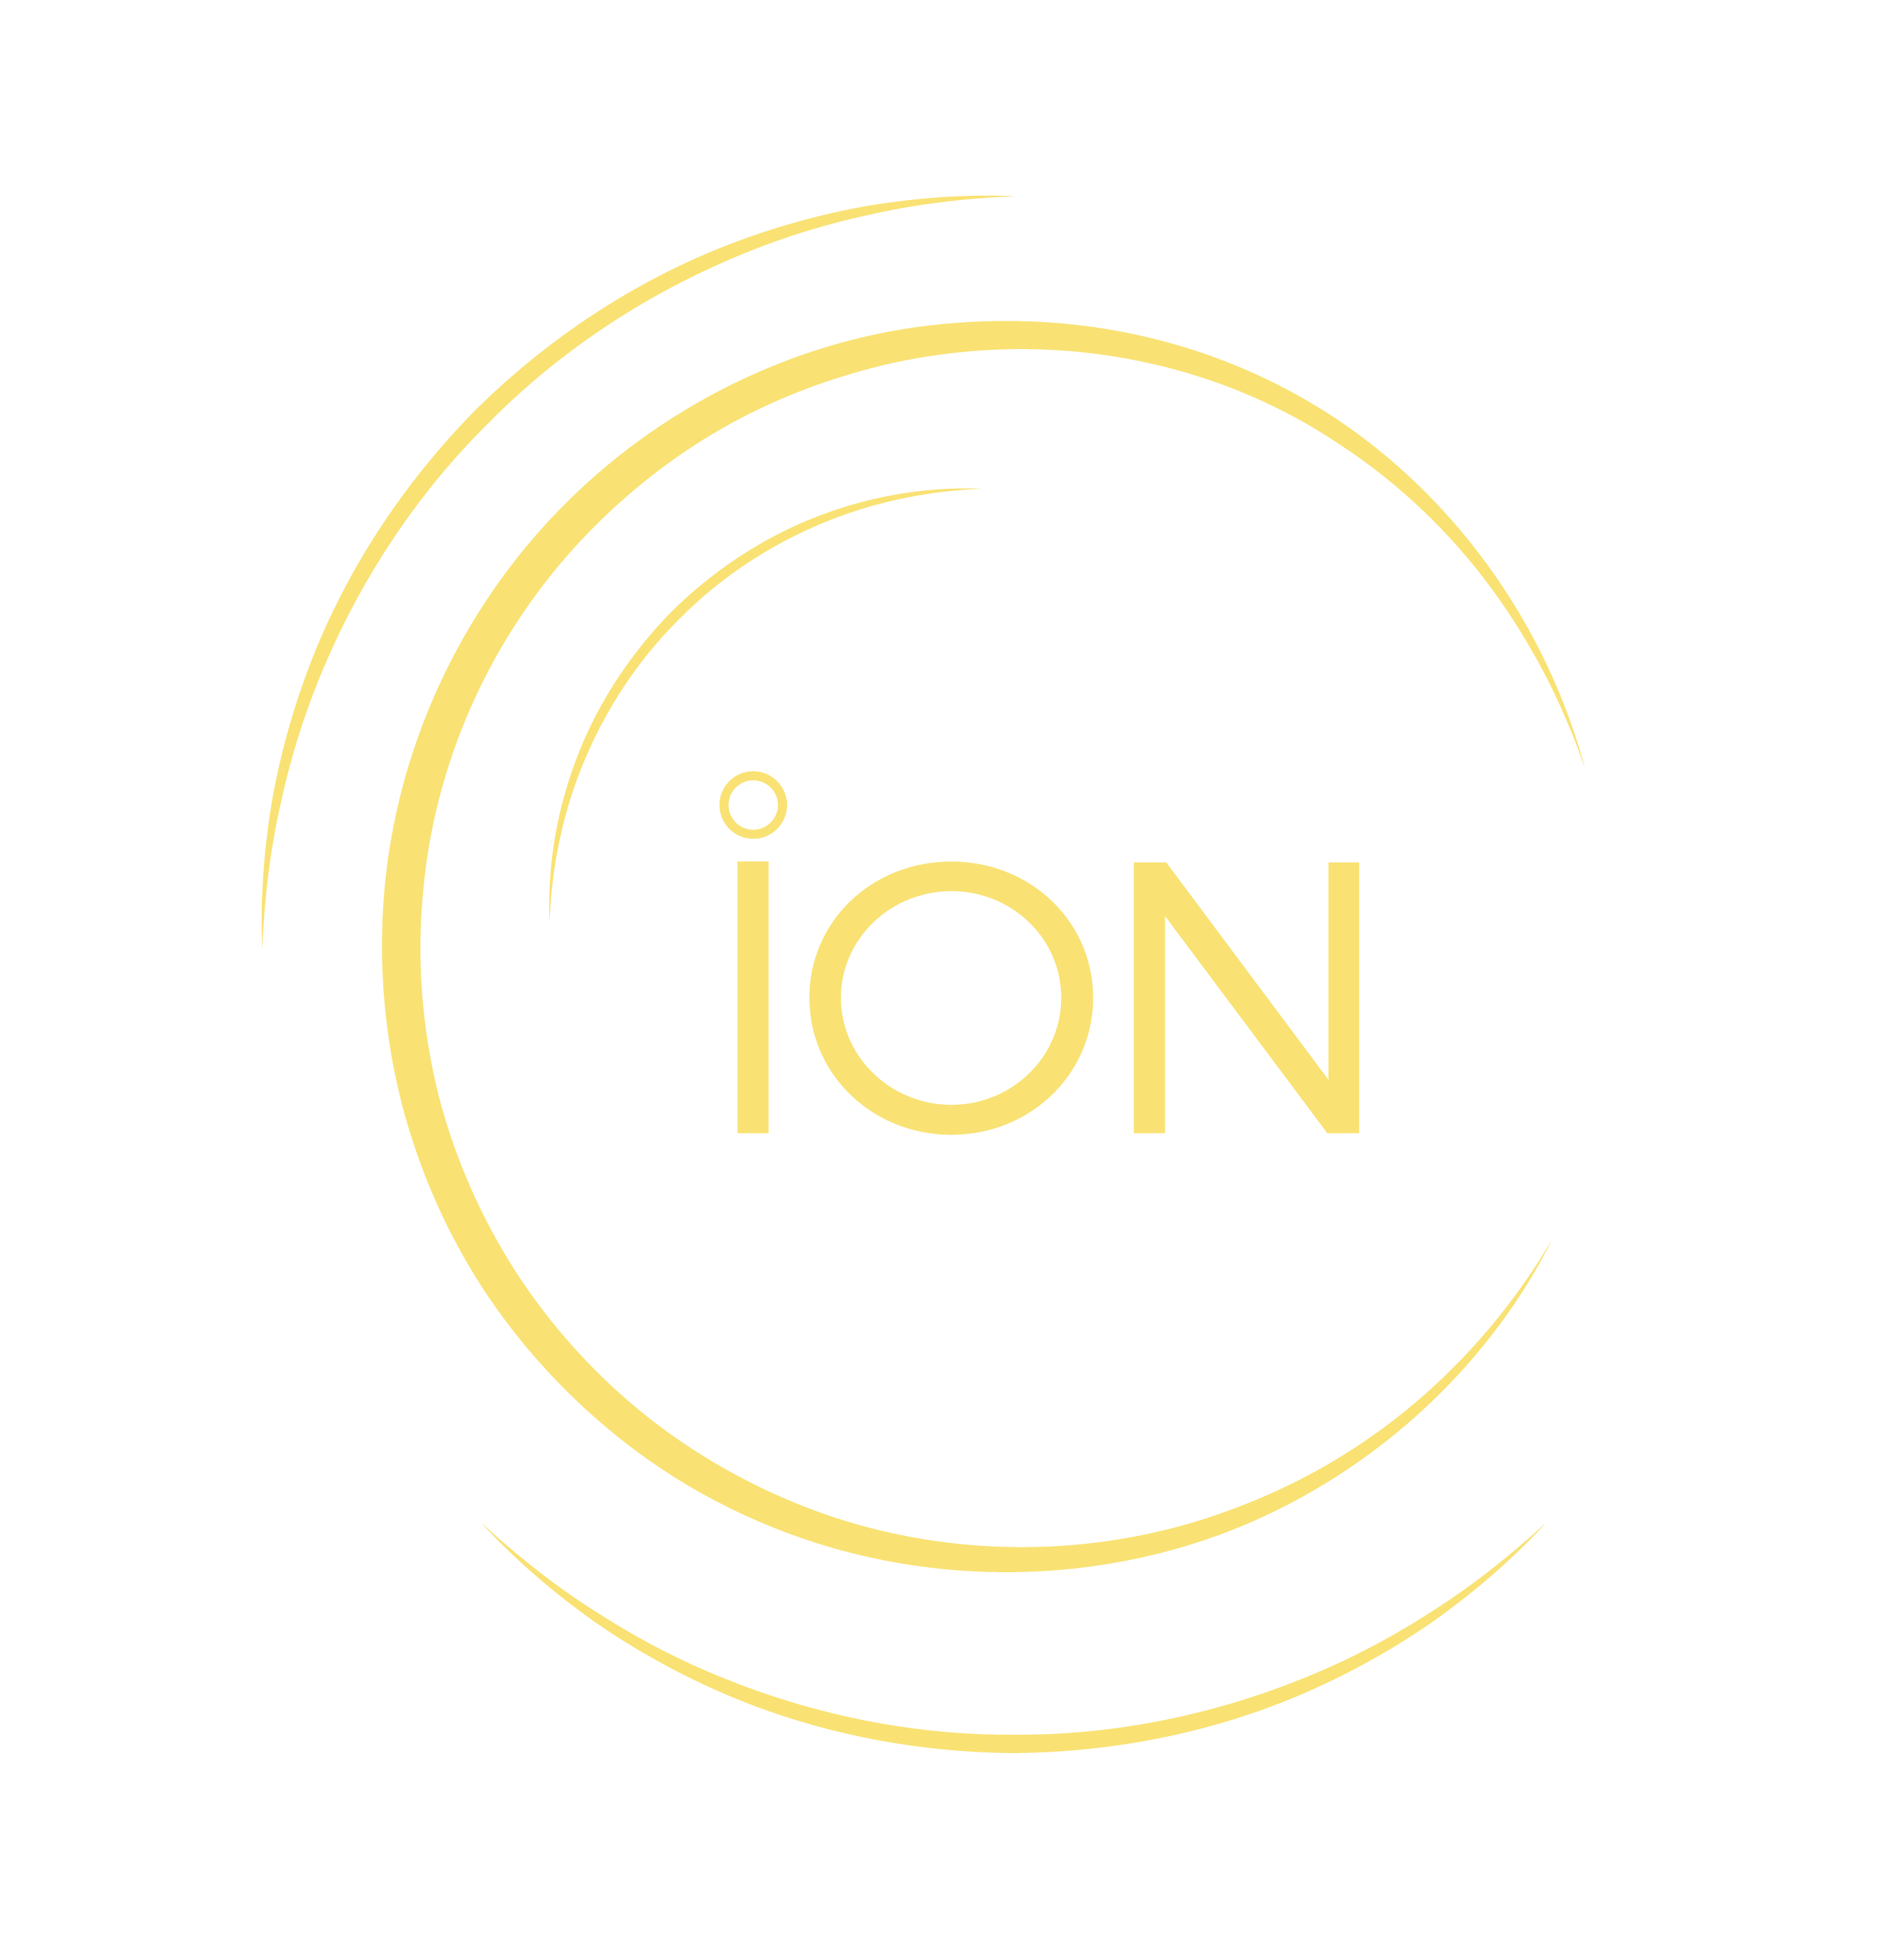 ion Ventures